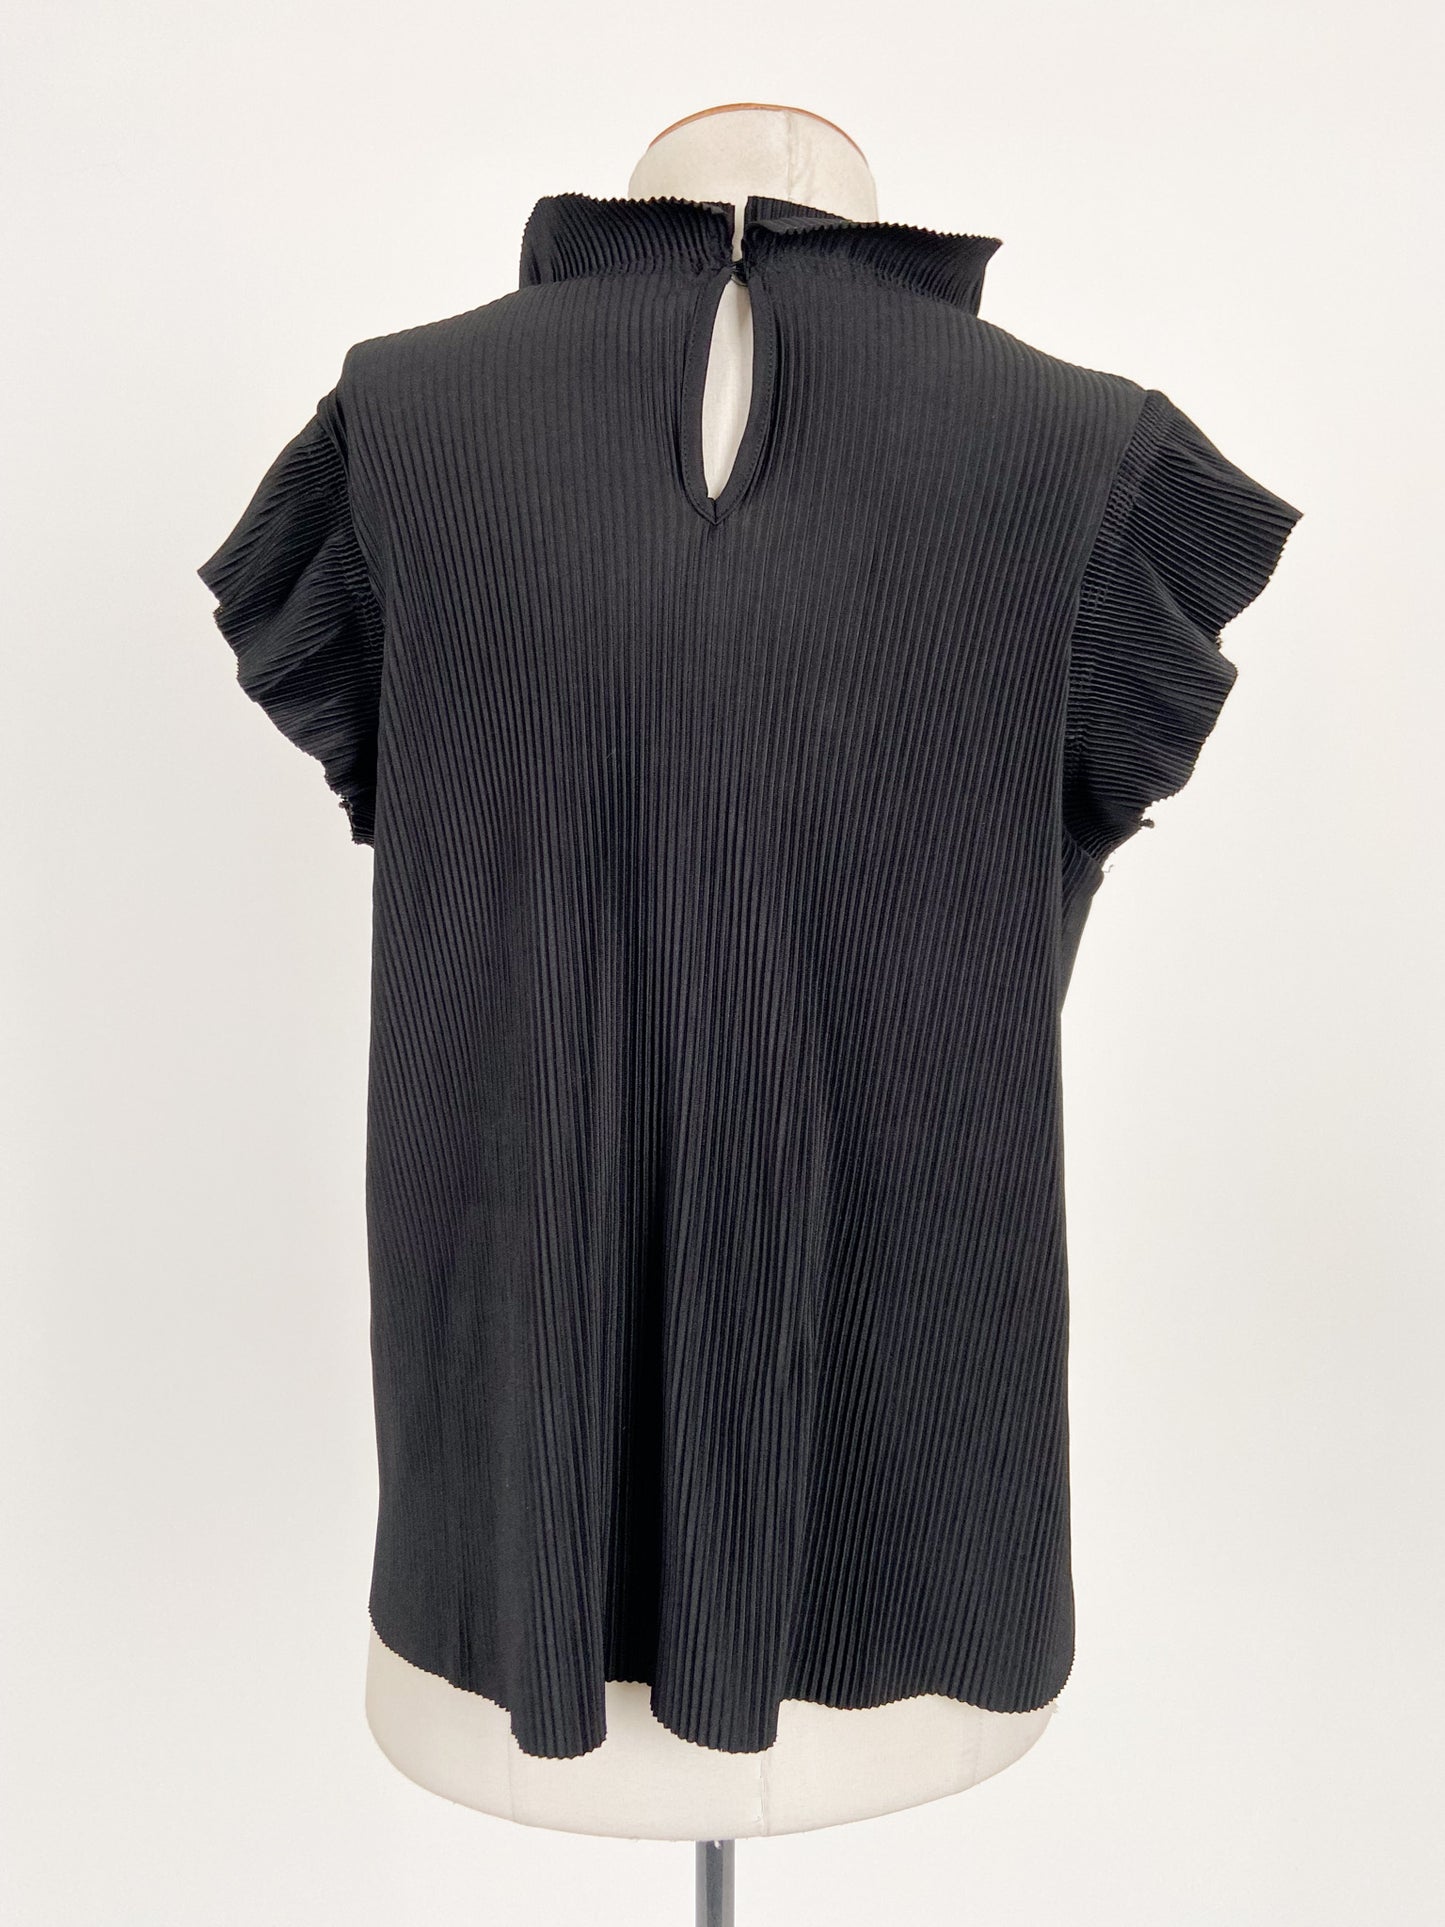 Zara | Black Workwear Top | Size S